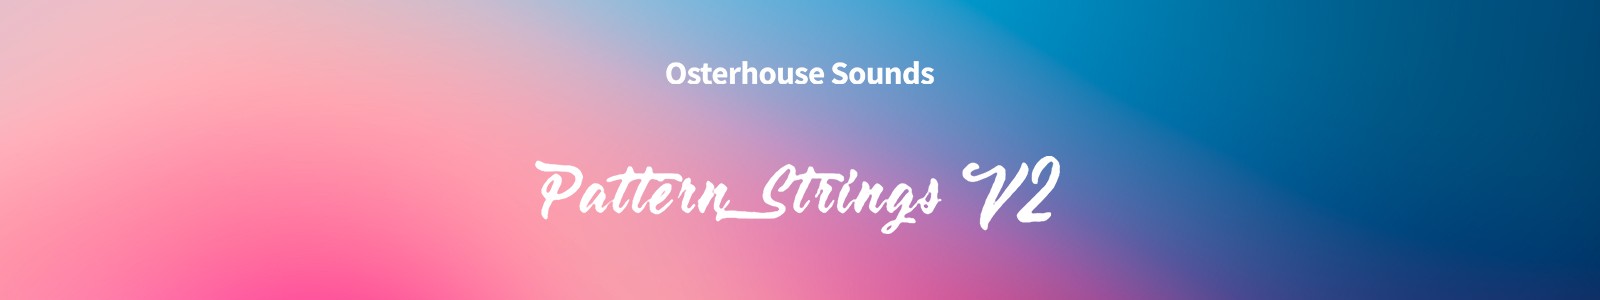 Pattern Strings by Osterhouse Sounds